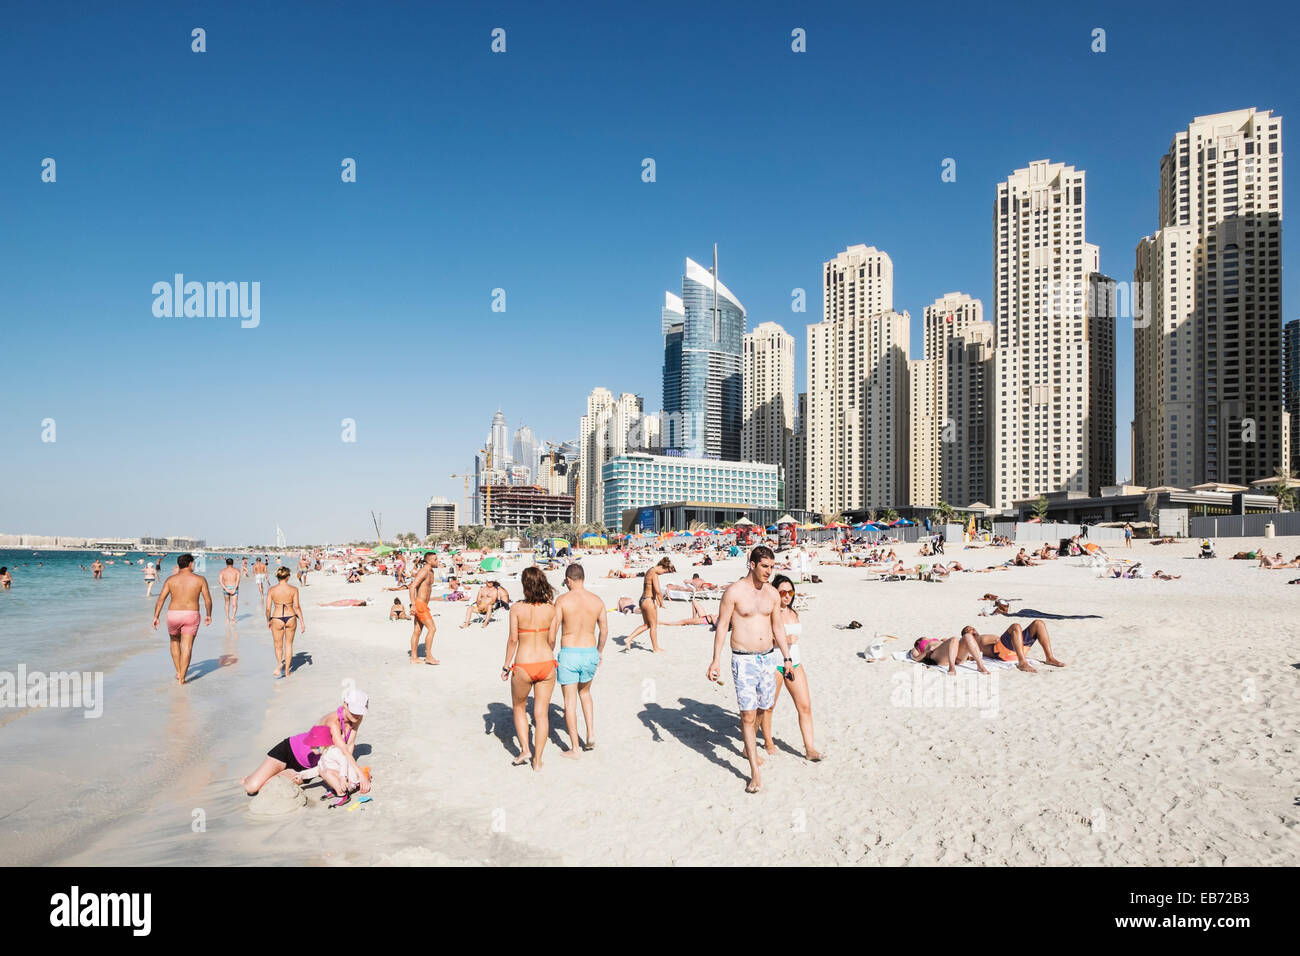 Occupé à la plage publique de Jumeirah Beach Resort (JBR) au quartier du port de plaisance de Dubaï Émirats Arabes Unis Banque D'Images